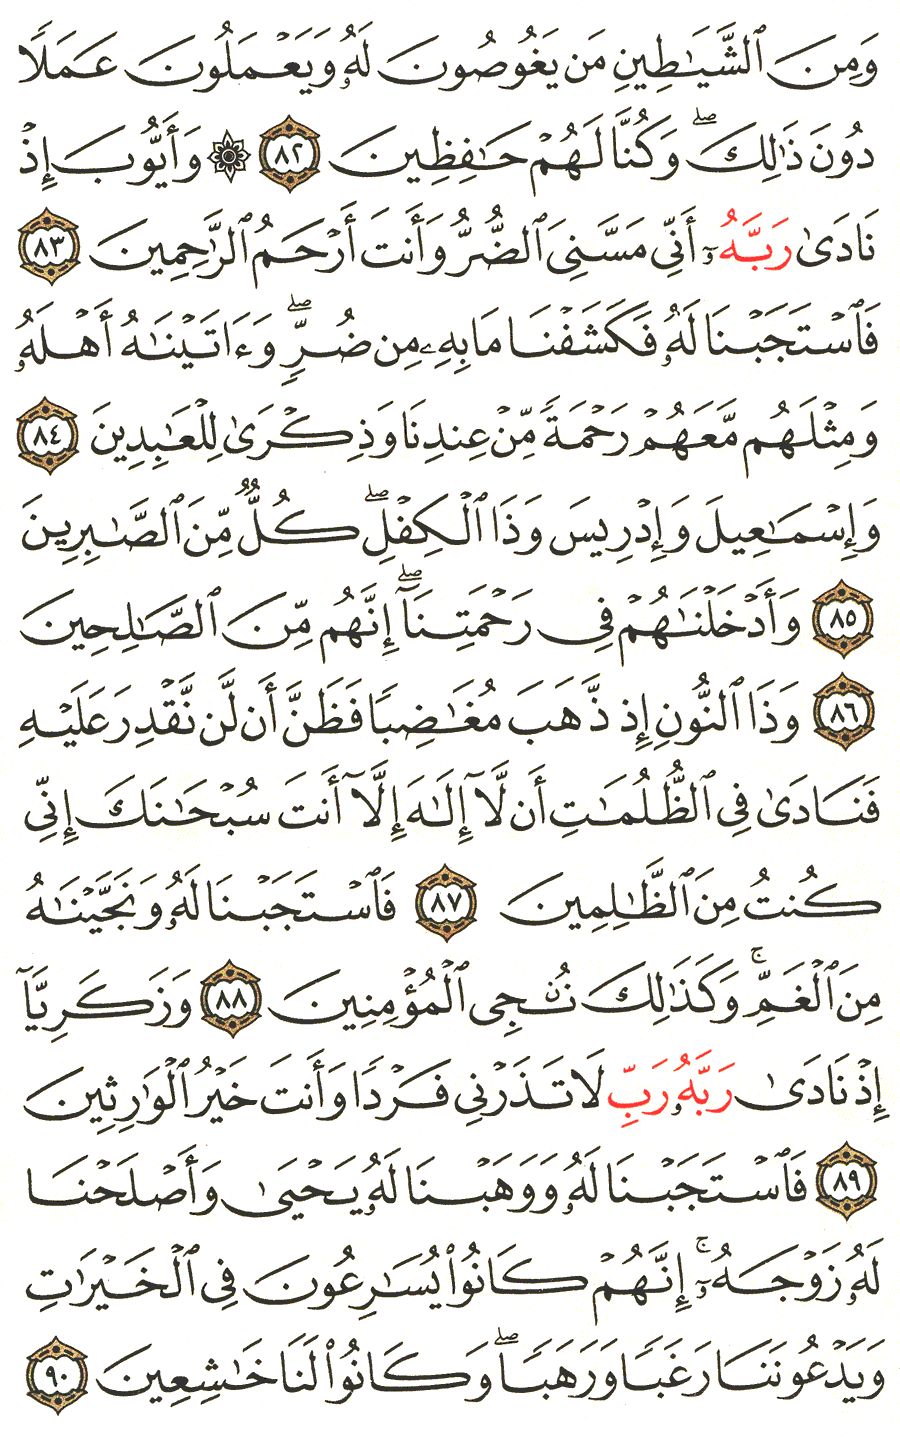 الصفحة 329 من القرآن الكريم